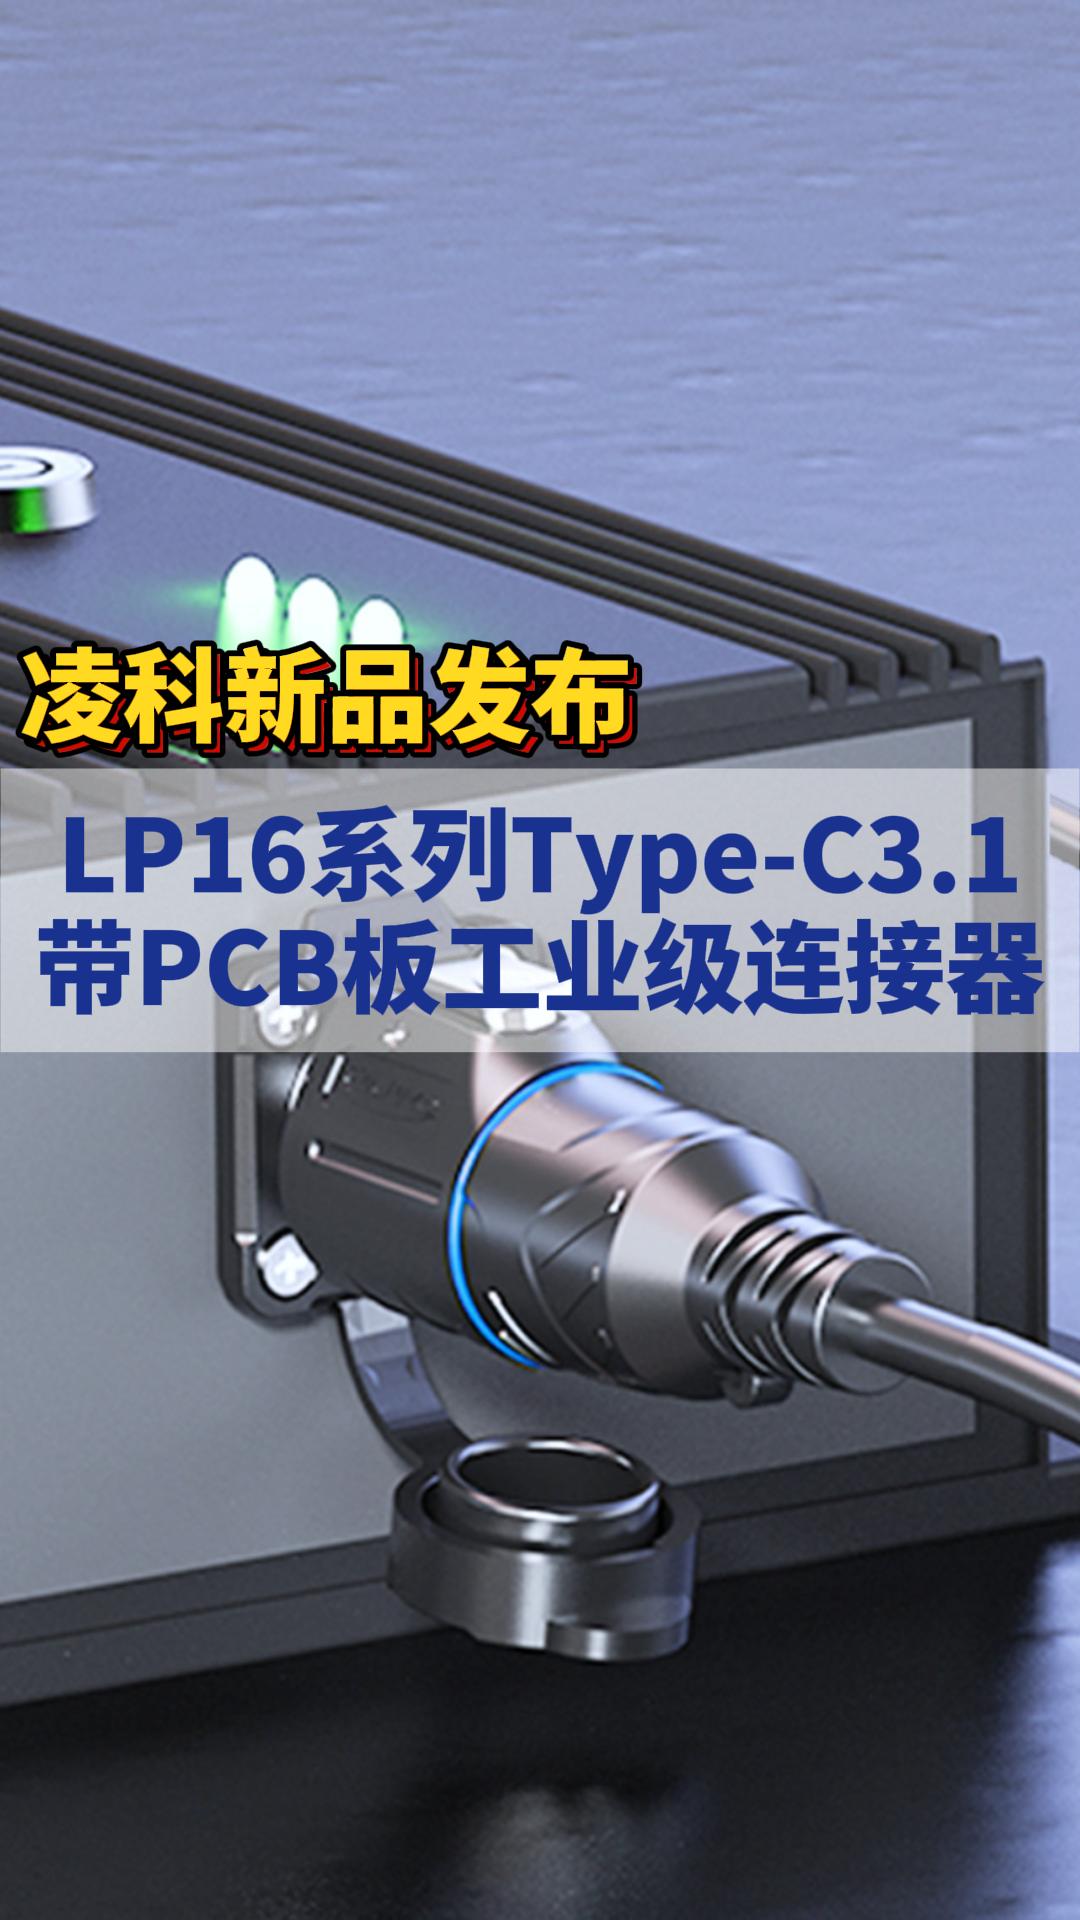 新品发布|凌科LP16系列Type-C3.1带PCB板的新品工业级连接器上市! #凌科电气  #工业连接器 